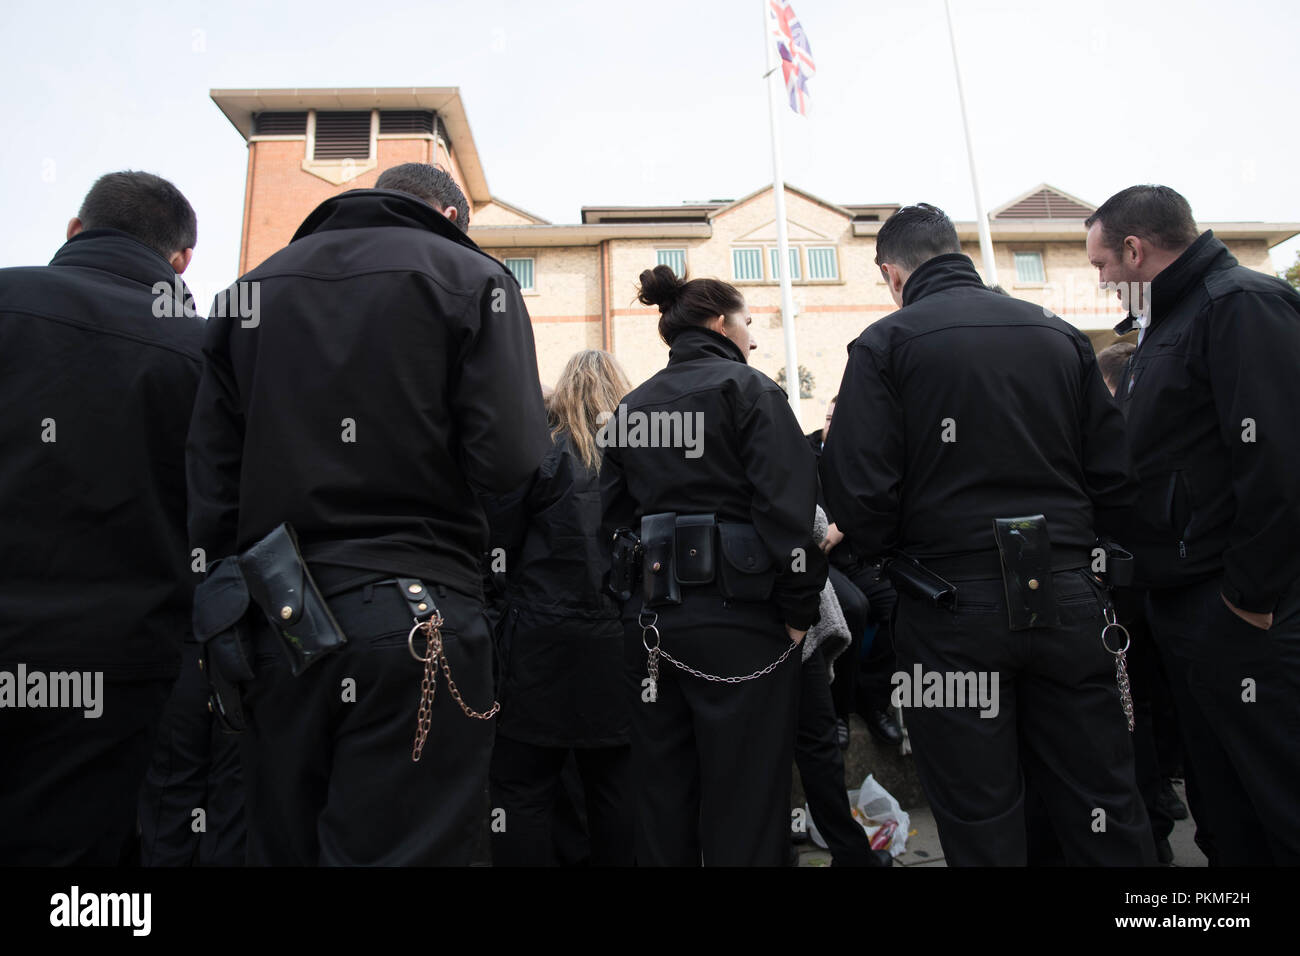 Des membres du POA, le syndicat du personnel pénitentiaire, protestant à l'extérieur du HMP Bedford après un rapport accablant, ont mis en garde contre un dangereux manque de contrôle à la prison. Banque D'Images